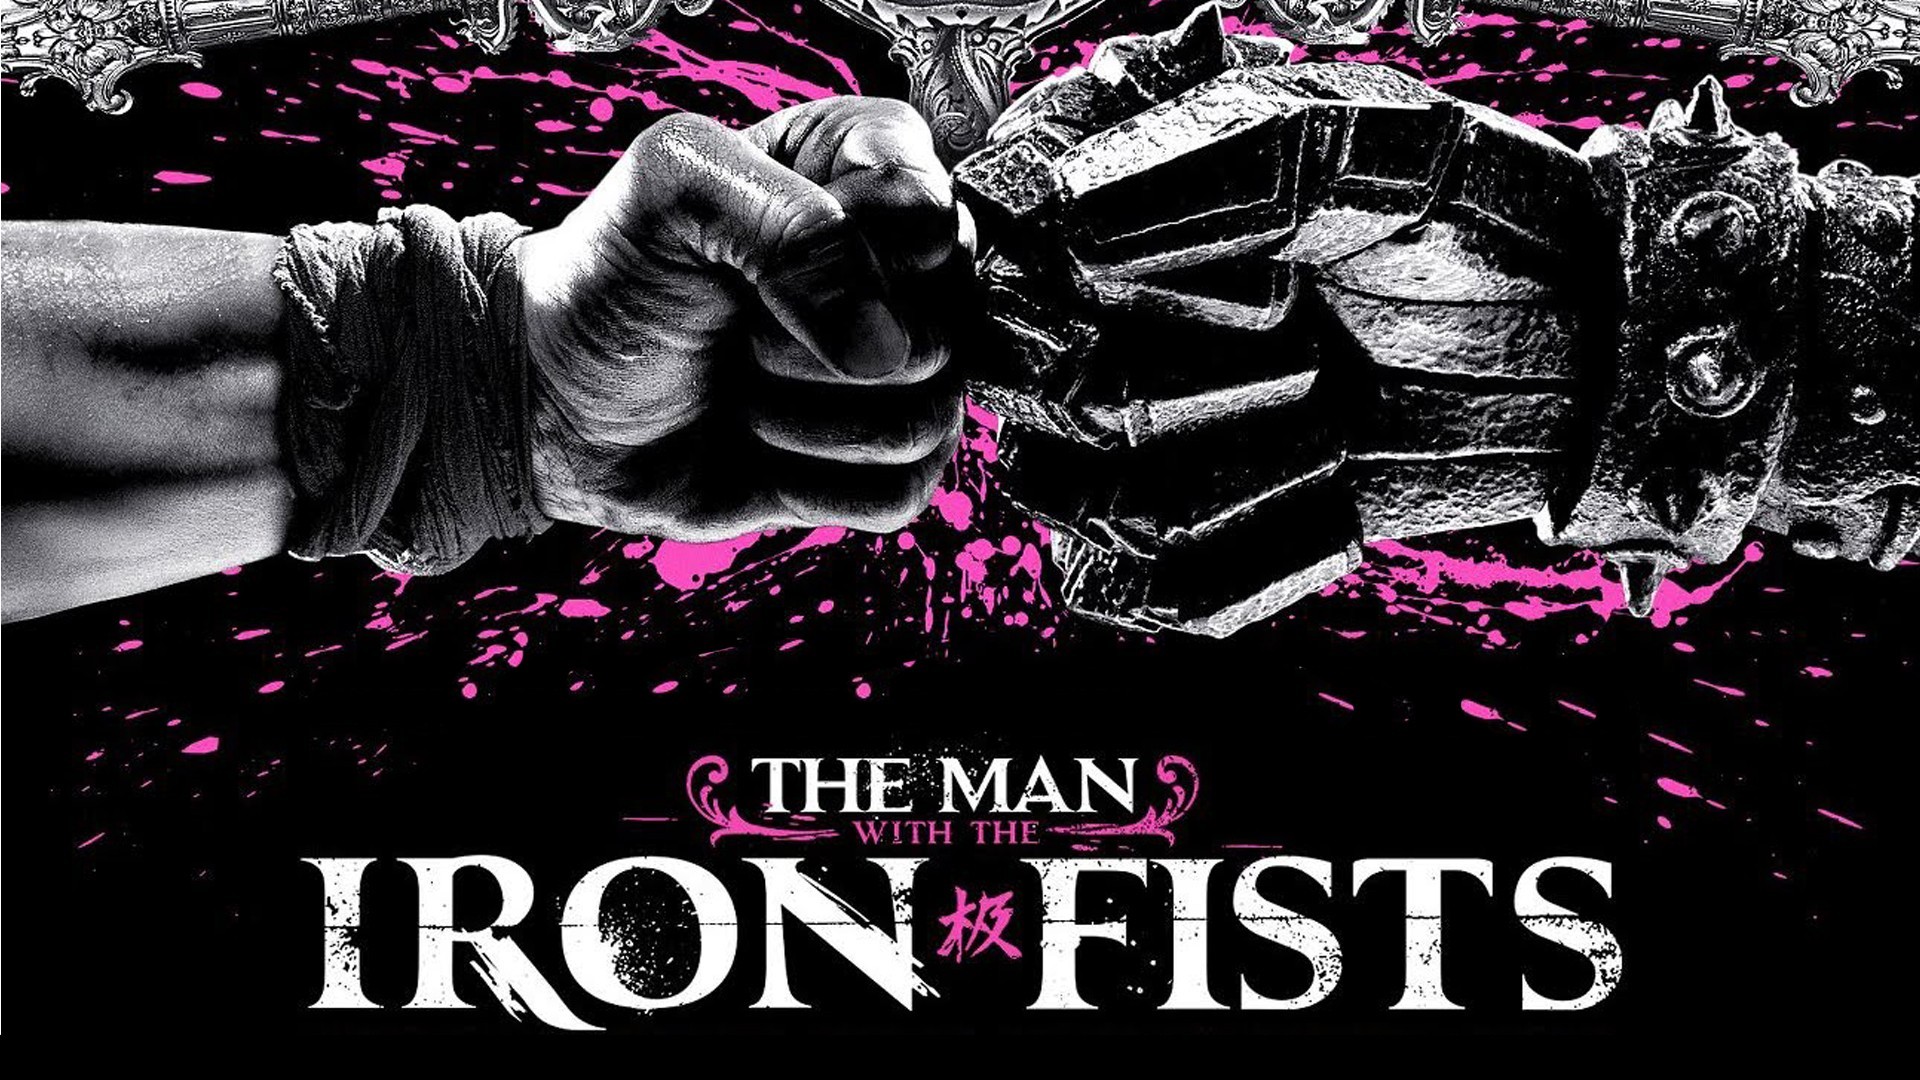 1920x1080 wallpaper movies Â· Iron Fist